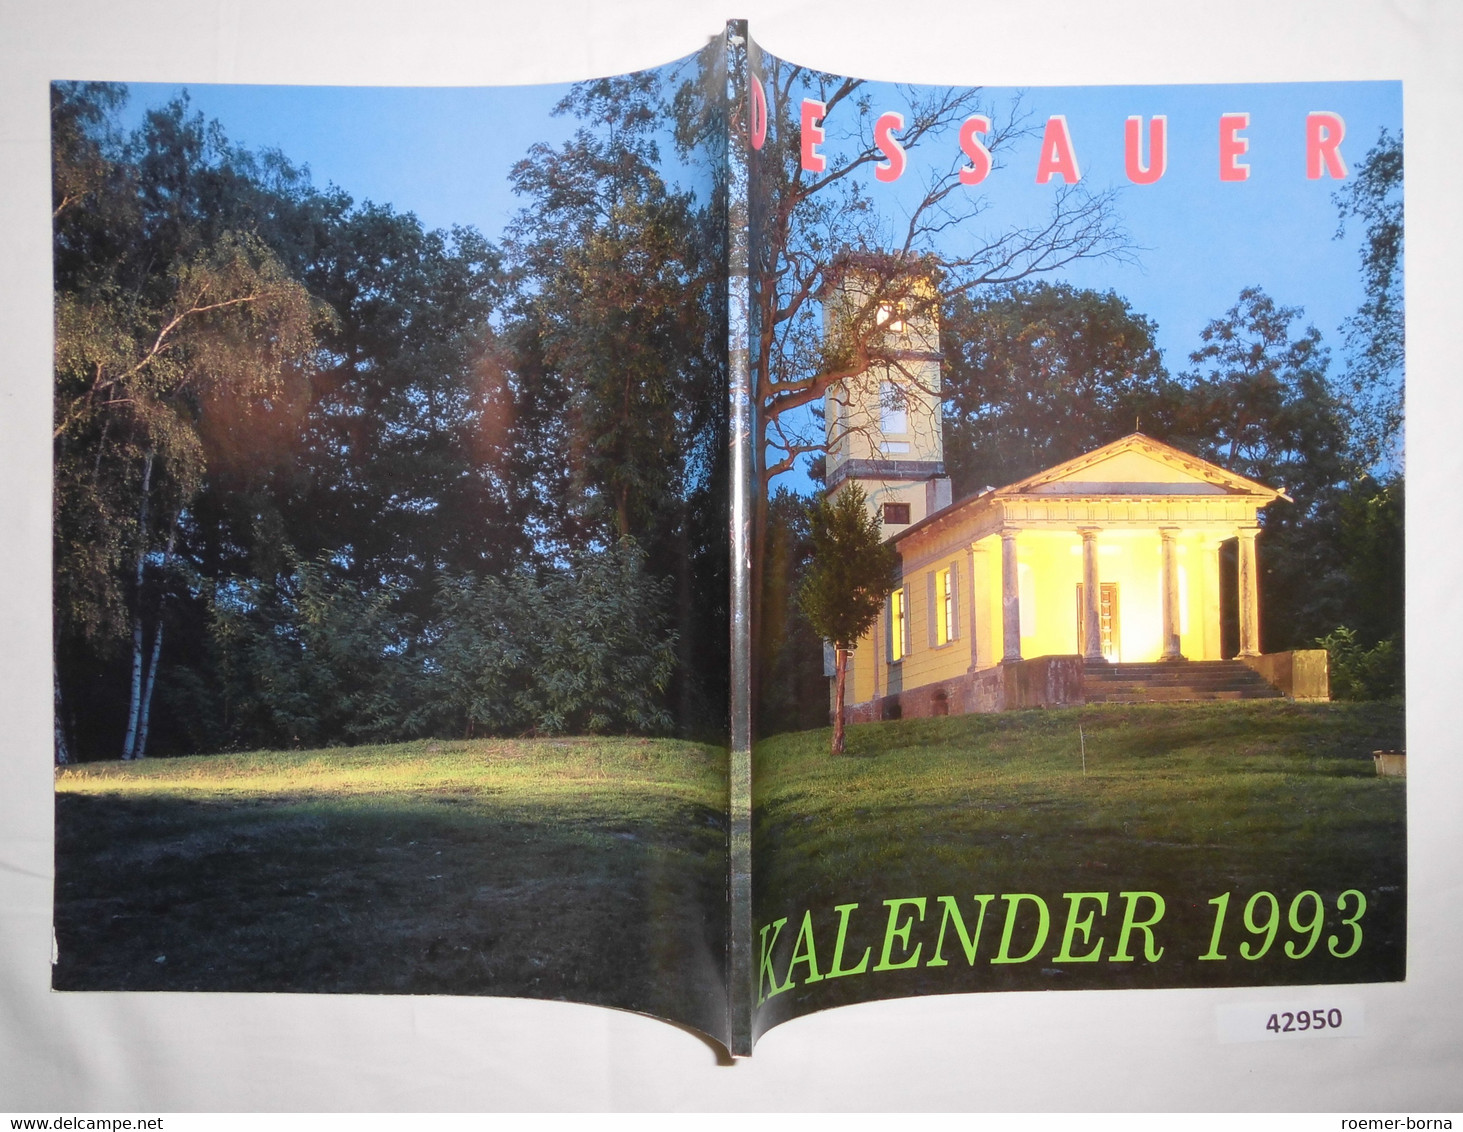 Dessauer Kalender 1993 (37. Jahrgang) - Calendars